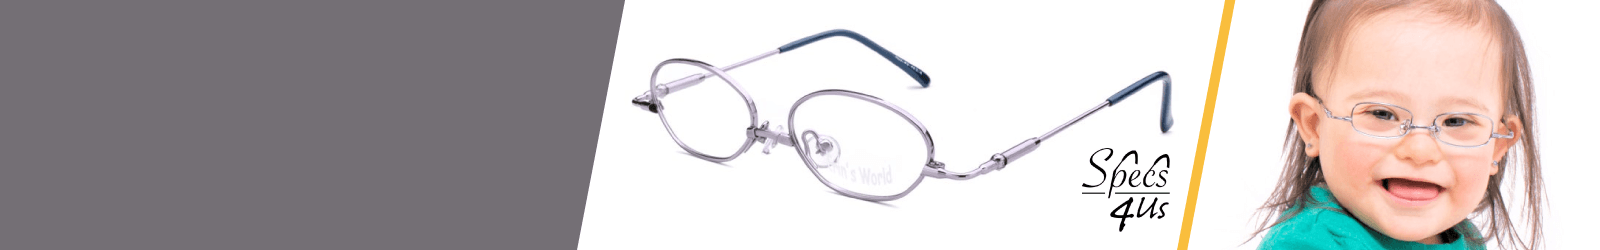 White Specs4us Eyewear for Kids   for Girls